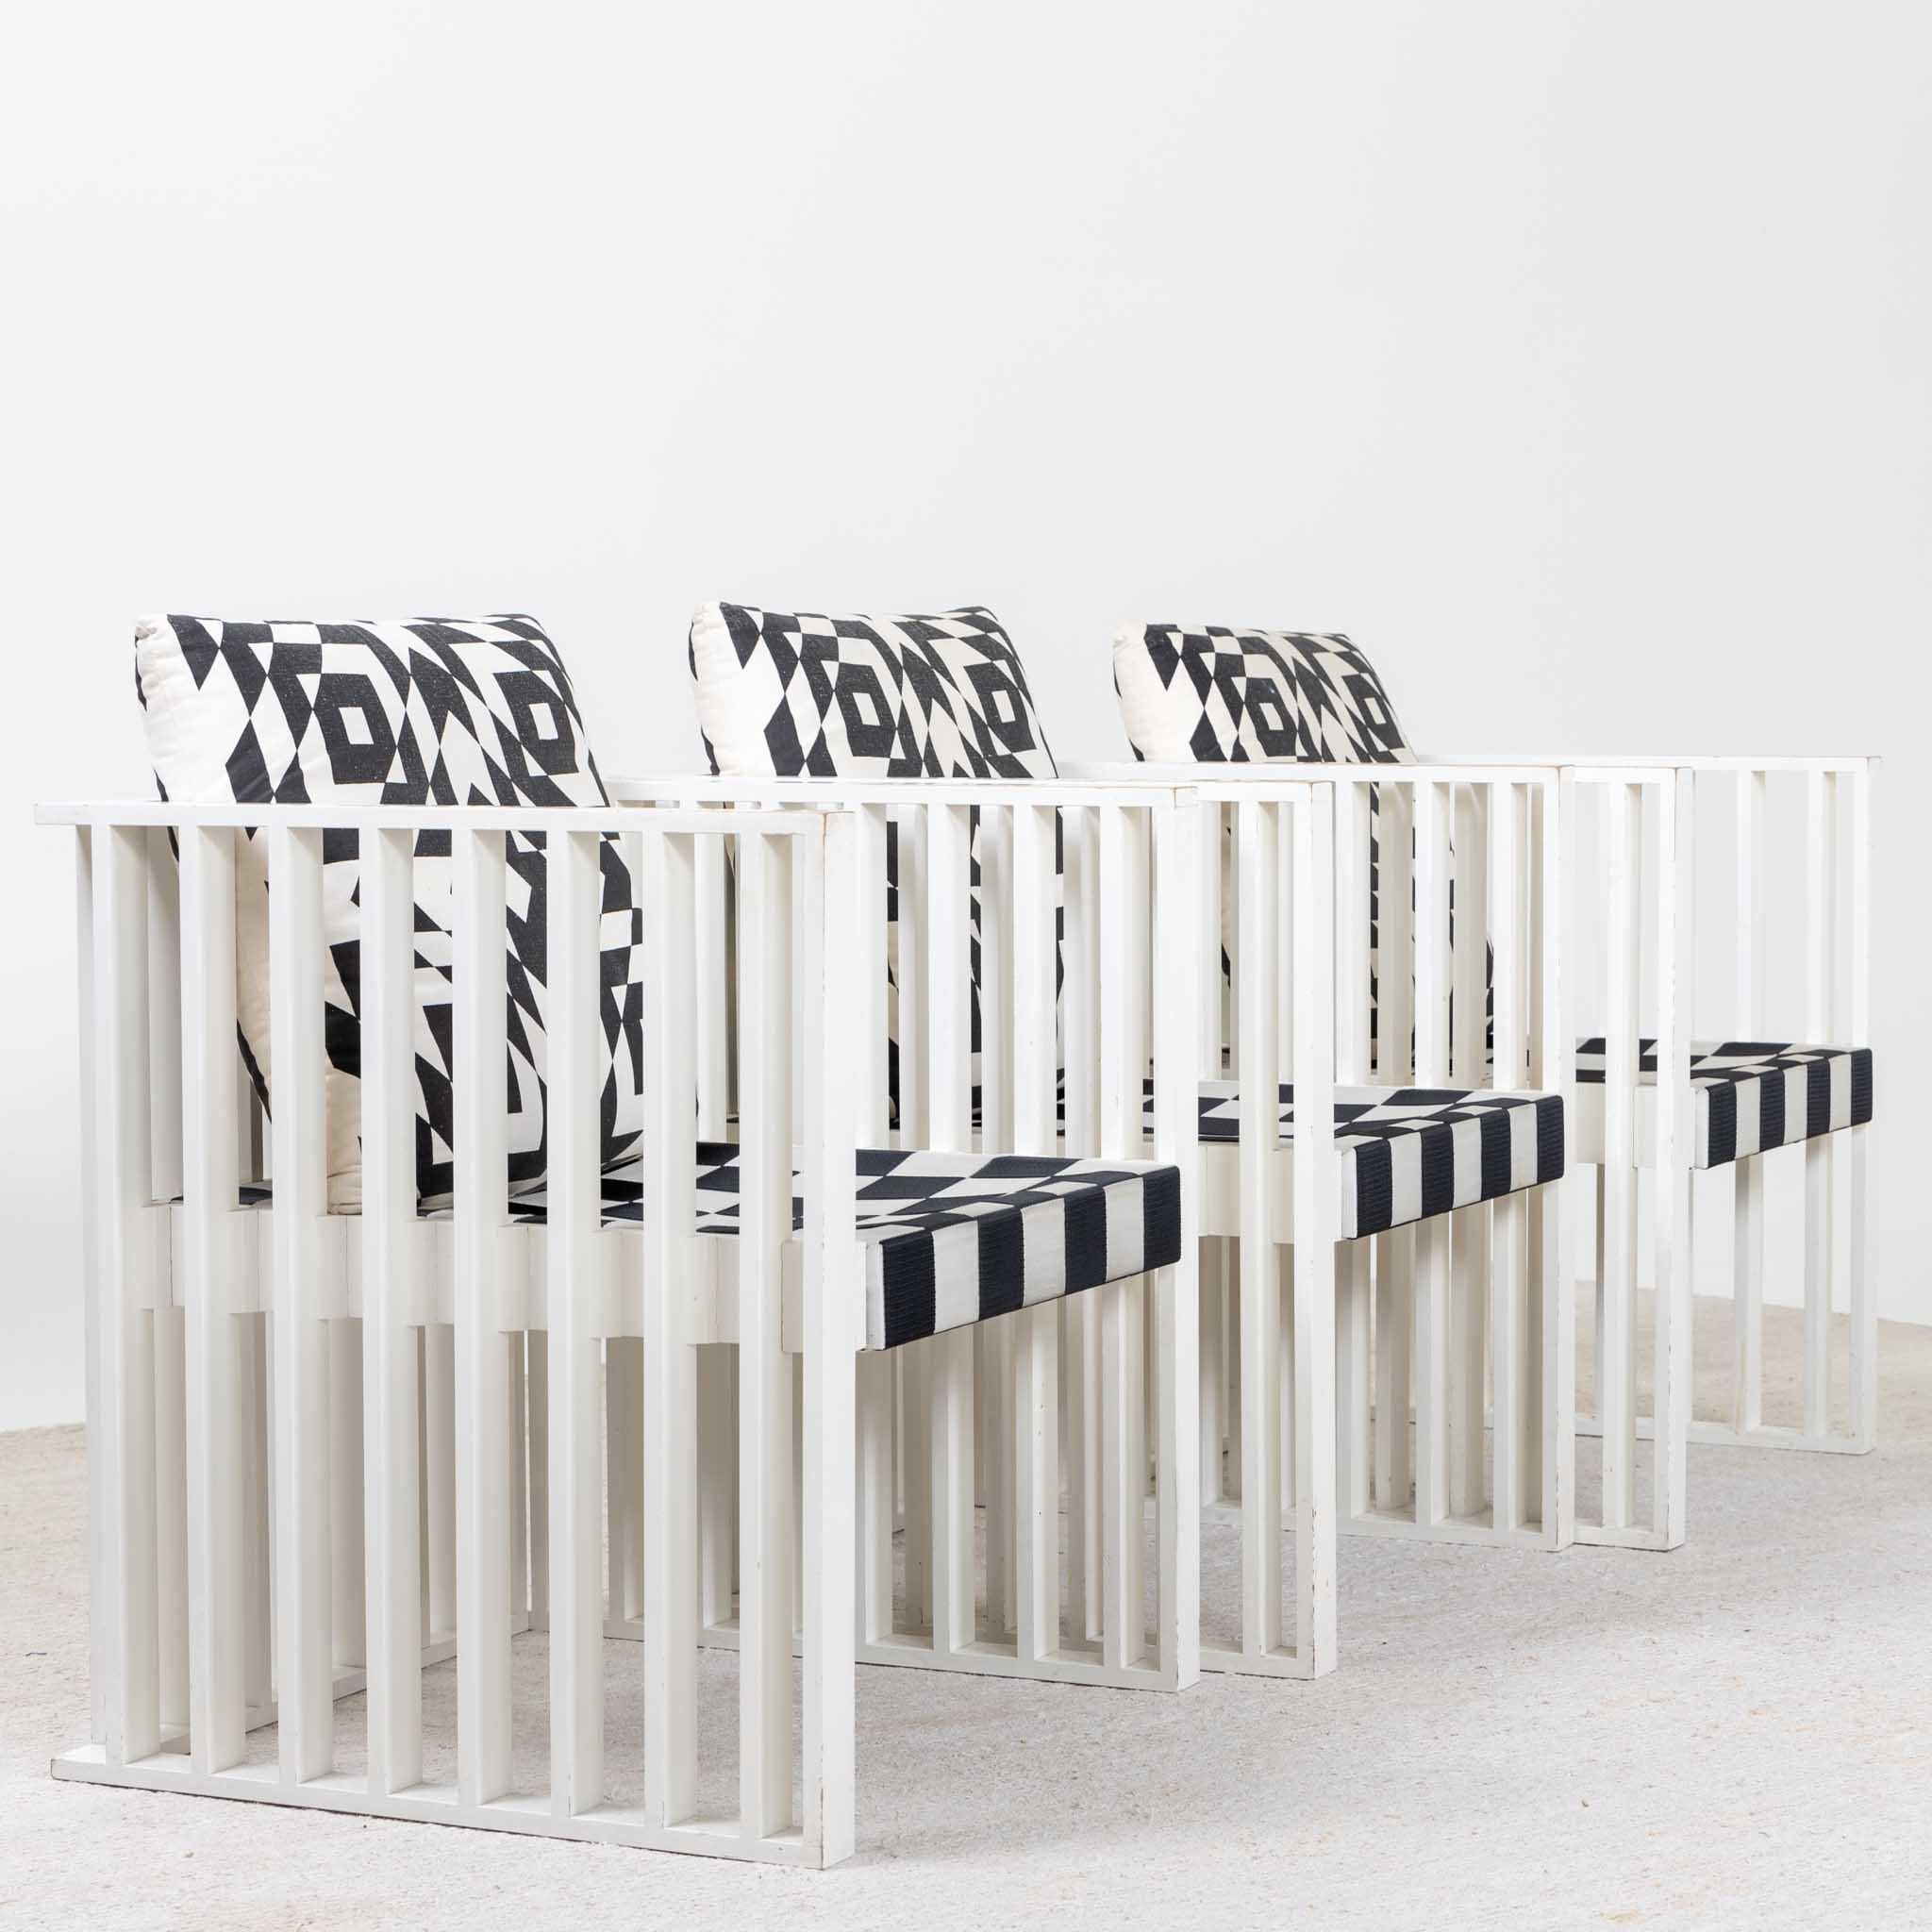 Vier Sessel, ursprünglich von Josef Hoffmann 1903 für das Sanatorium Purkersdorf in Wien entworfen. Das geometrische Konzept der Sessel, das aus weiß lackierten vertikalen Streben besteht, verdeutlicht die Innovationskraft der Wiener Secession und